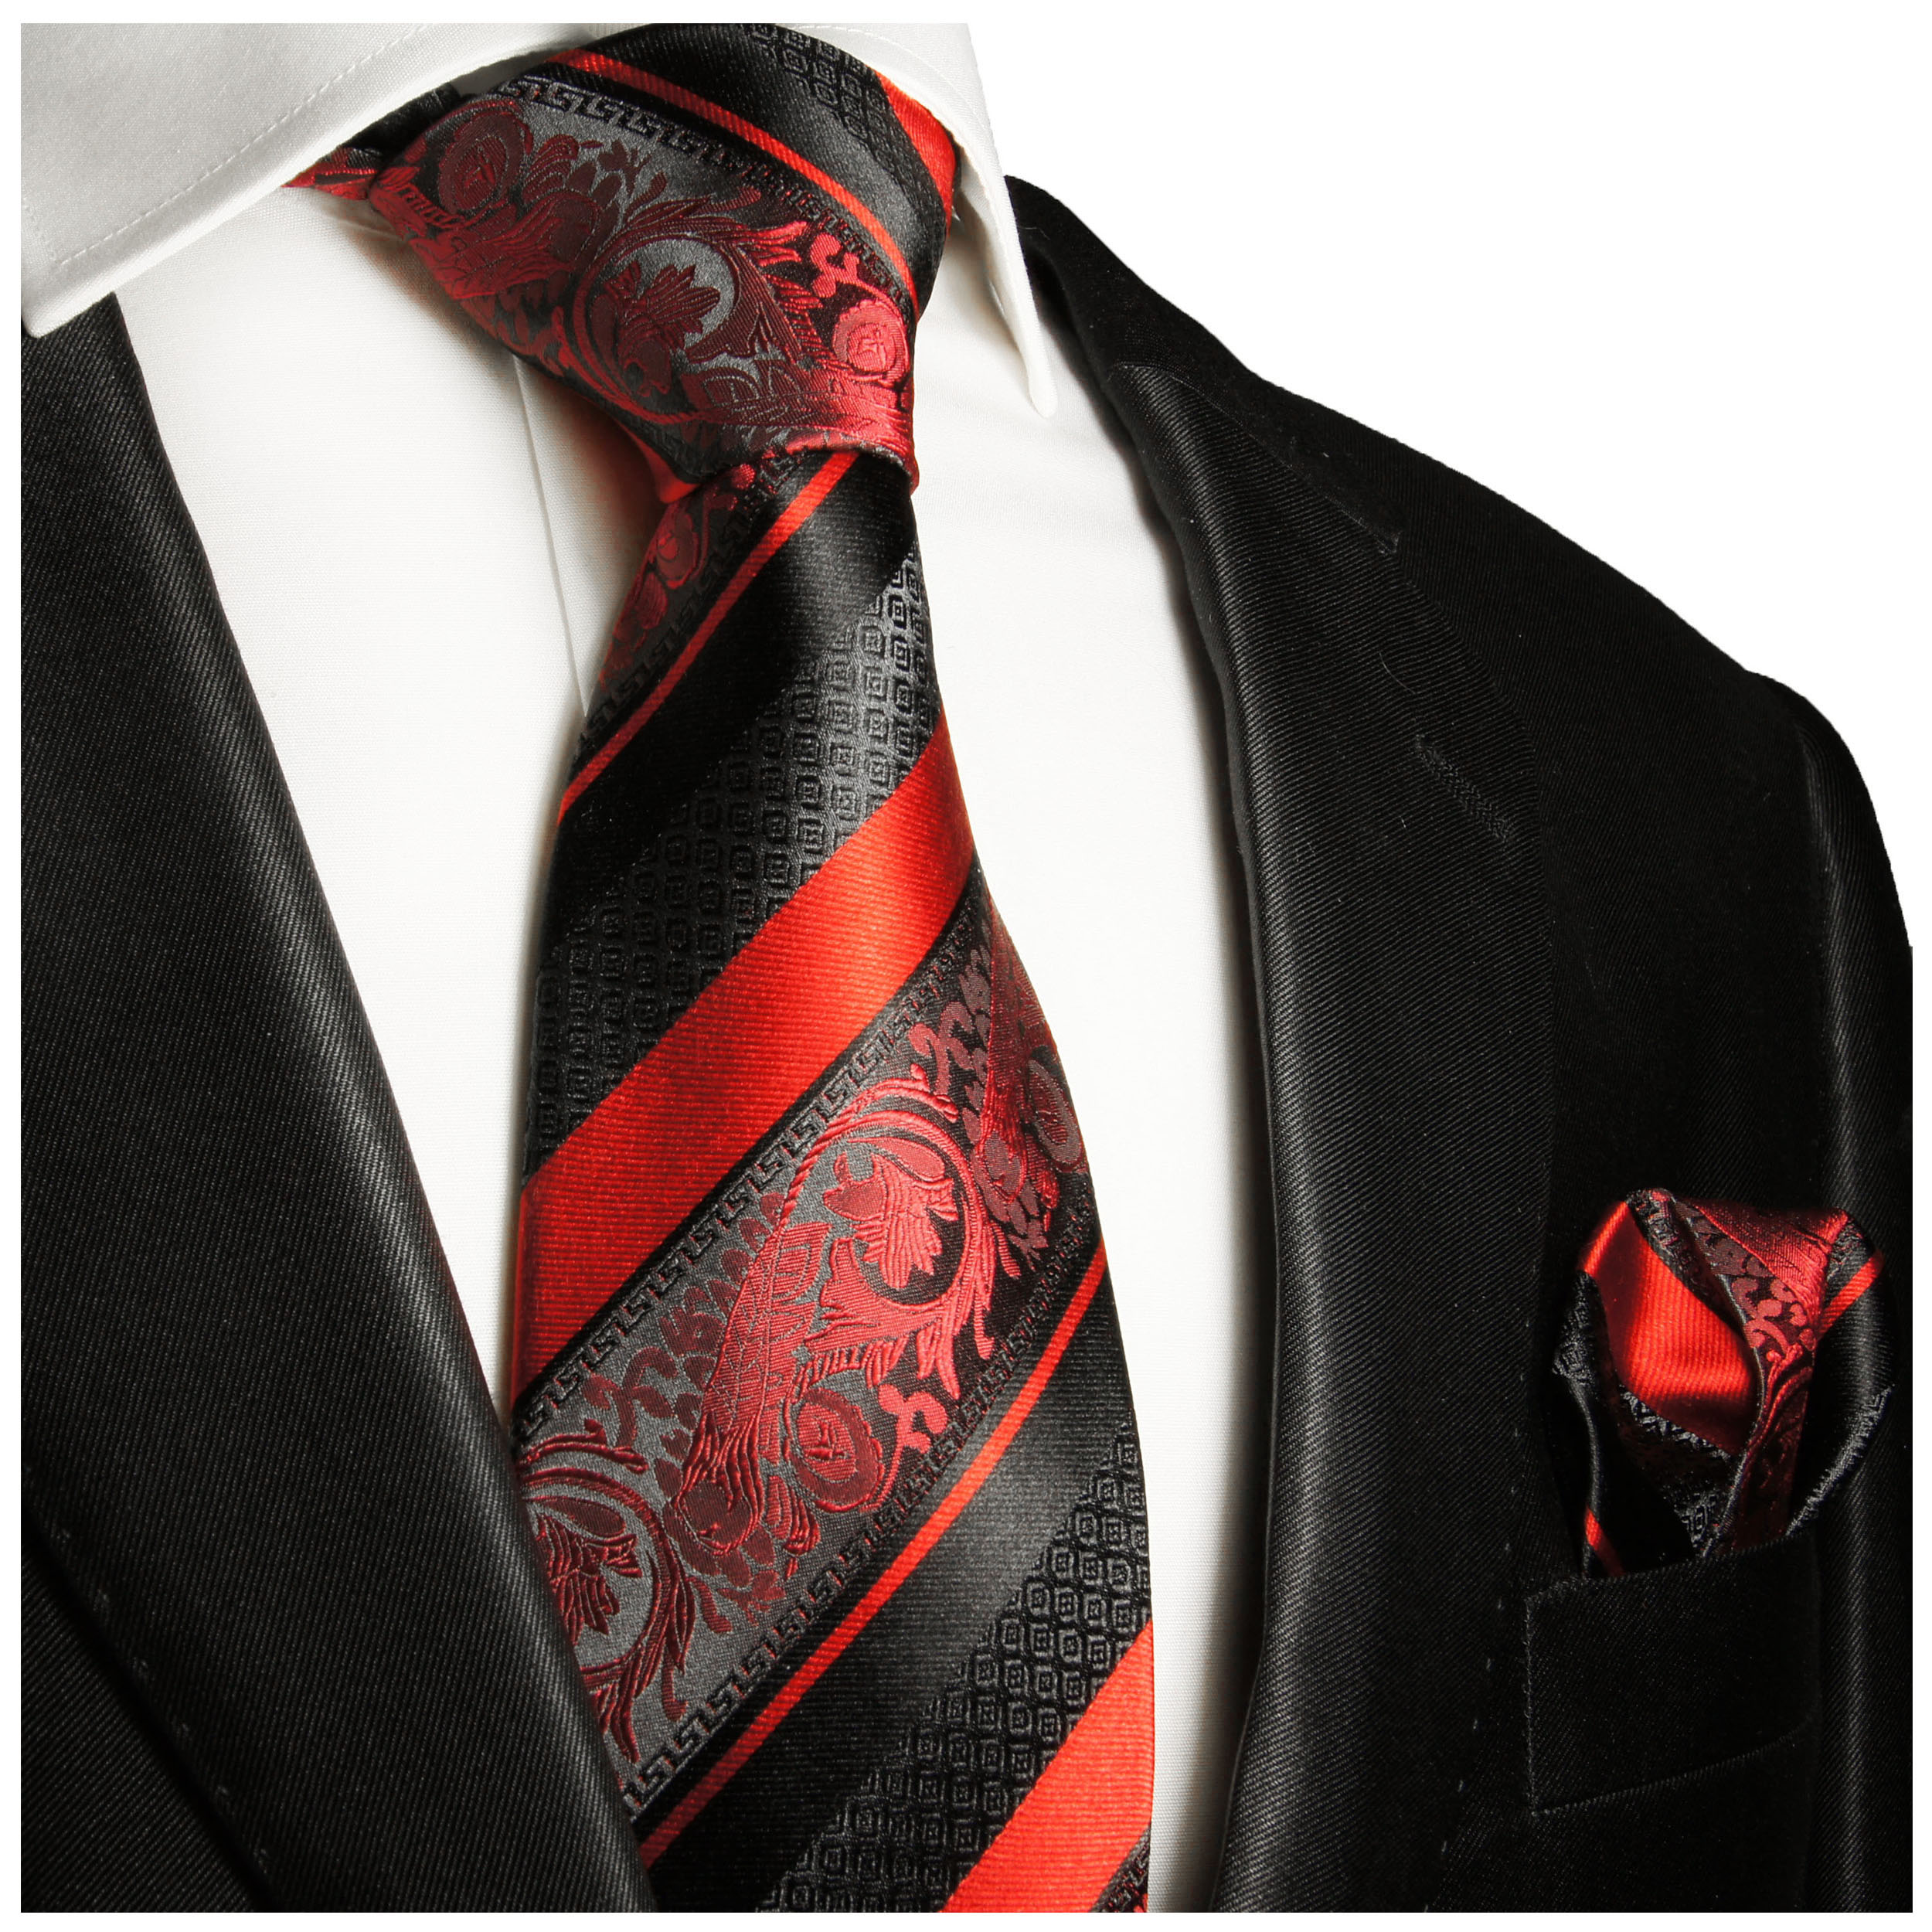 Mexx Seidenkrawatte rot dunkelrot weinrot kariert Krawatte Tie Seide Silk 